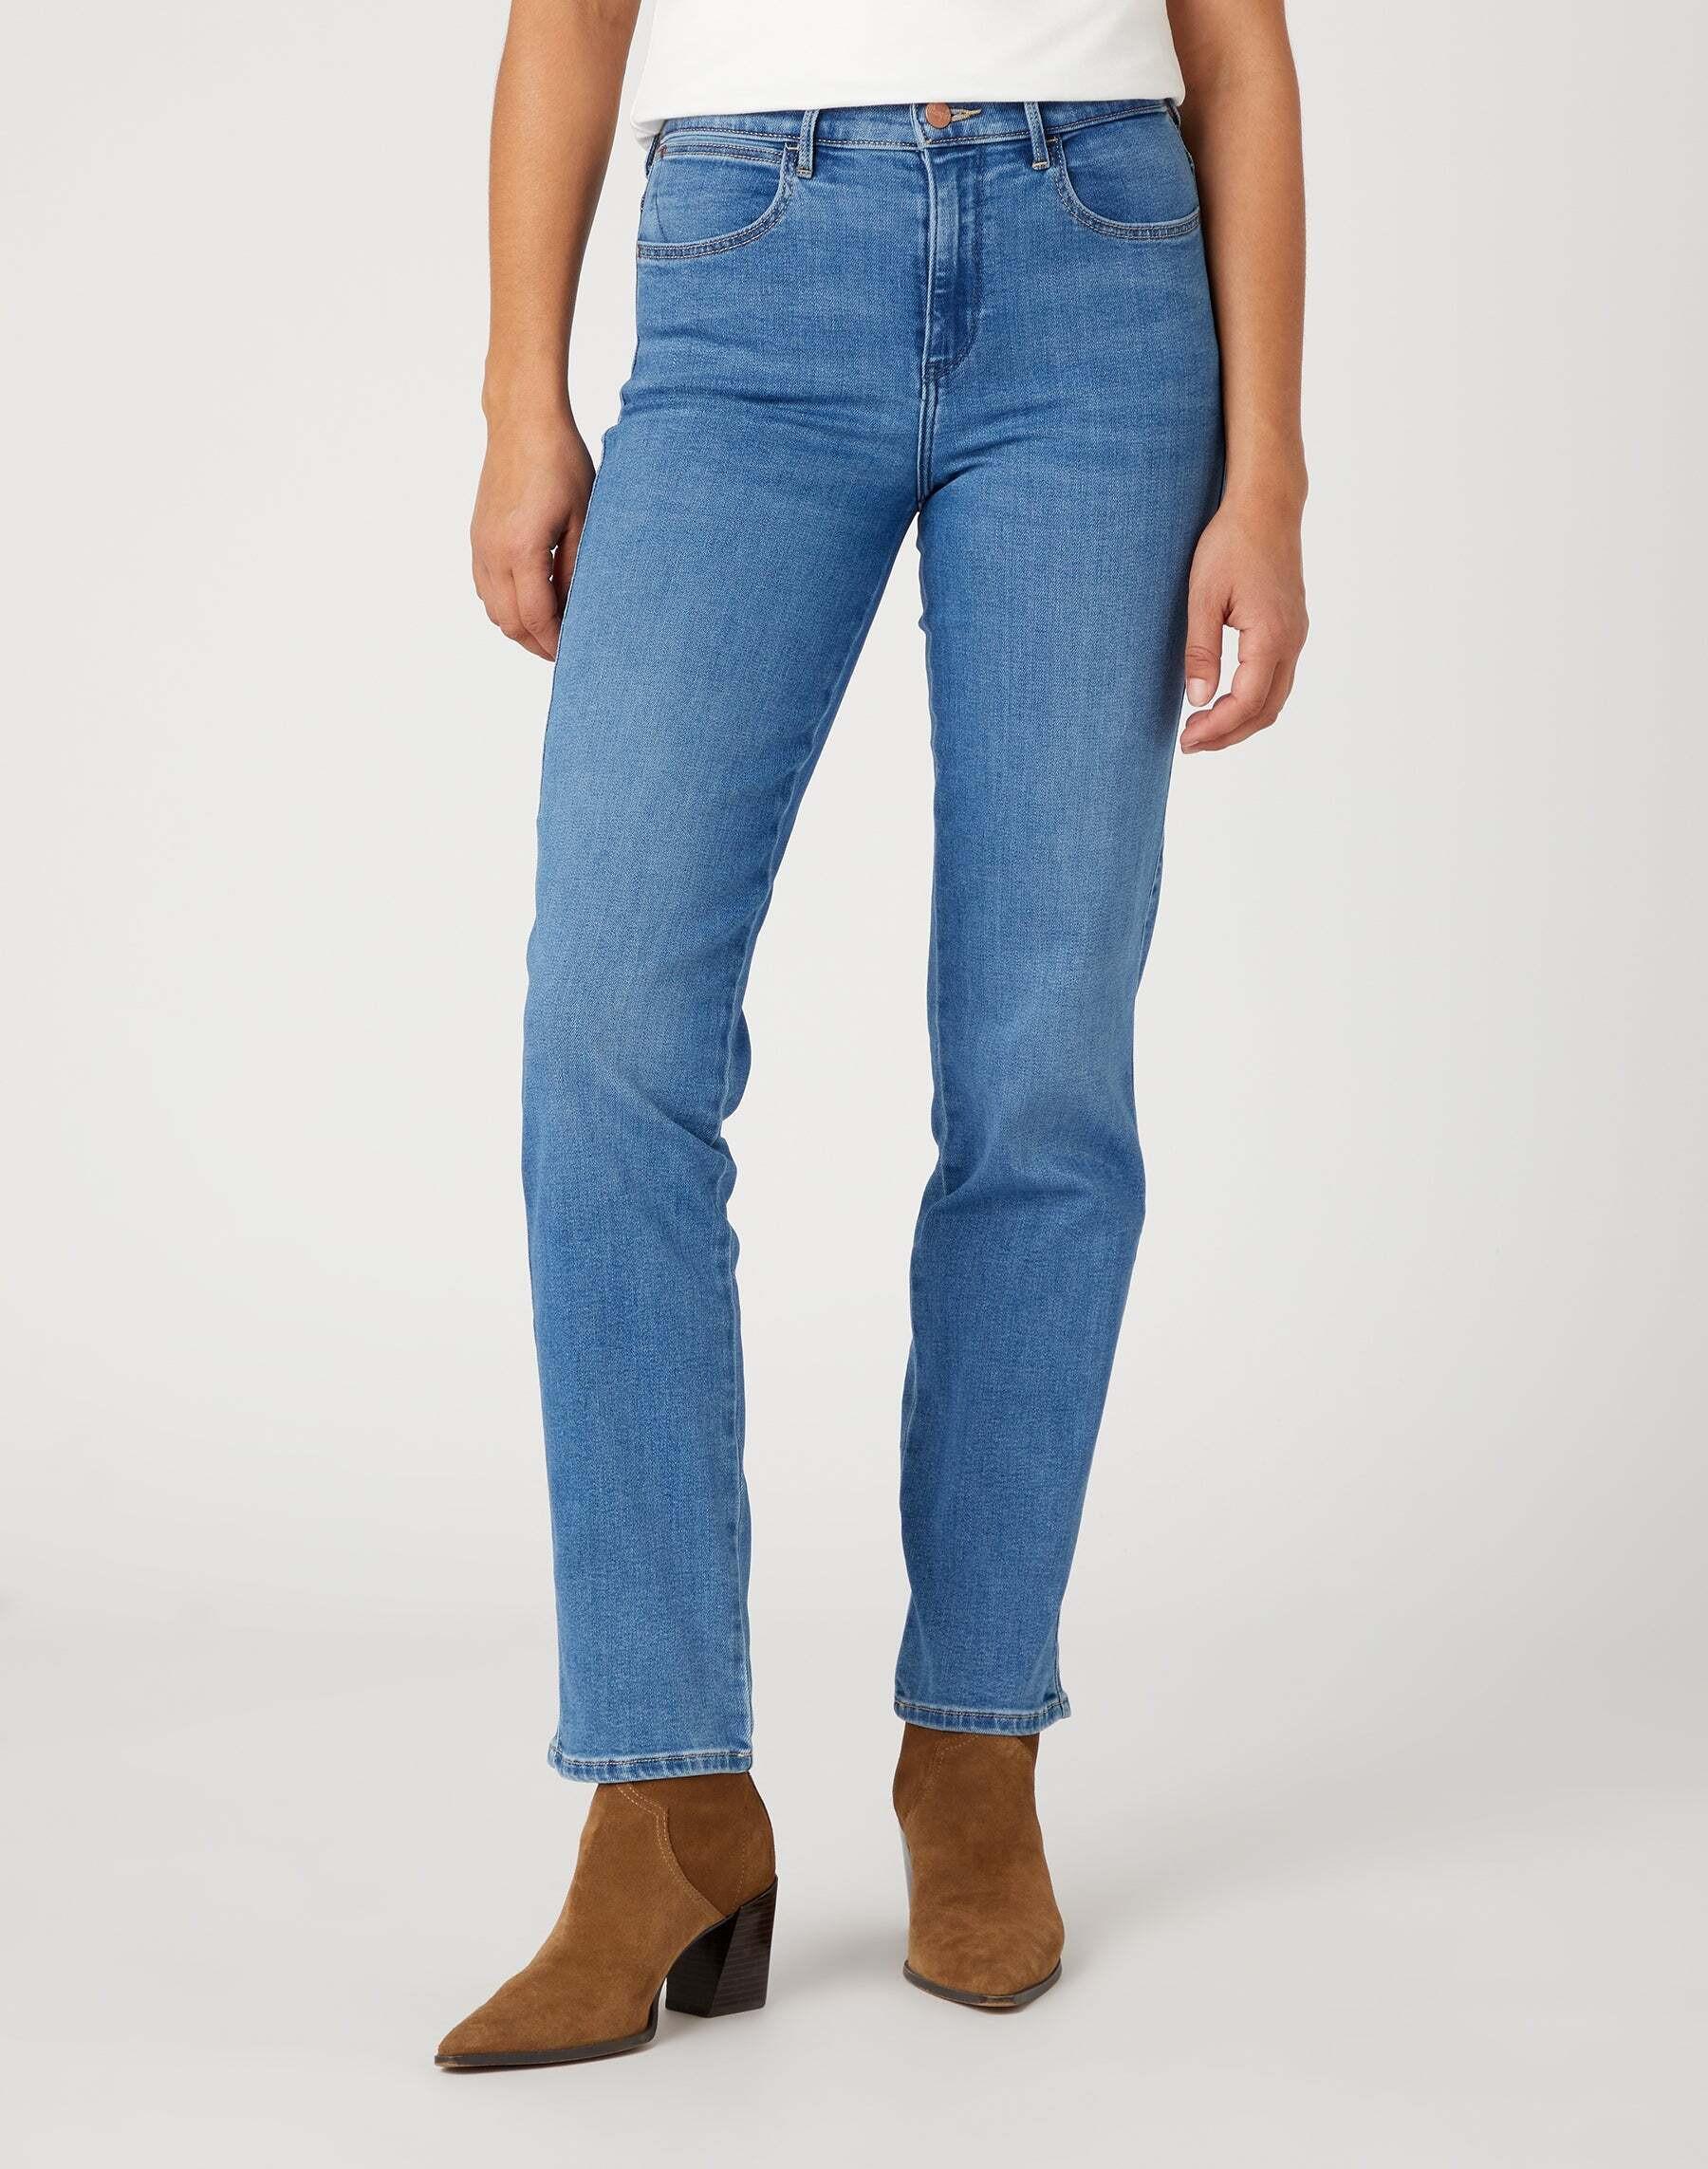 Jeans Straight Damen Hellblau L32/W28 von Wrangler